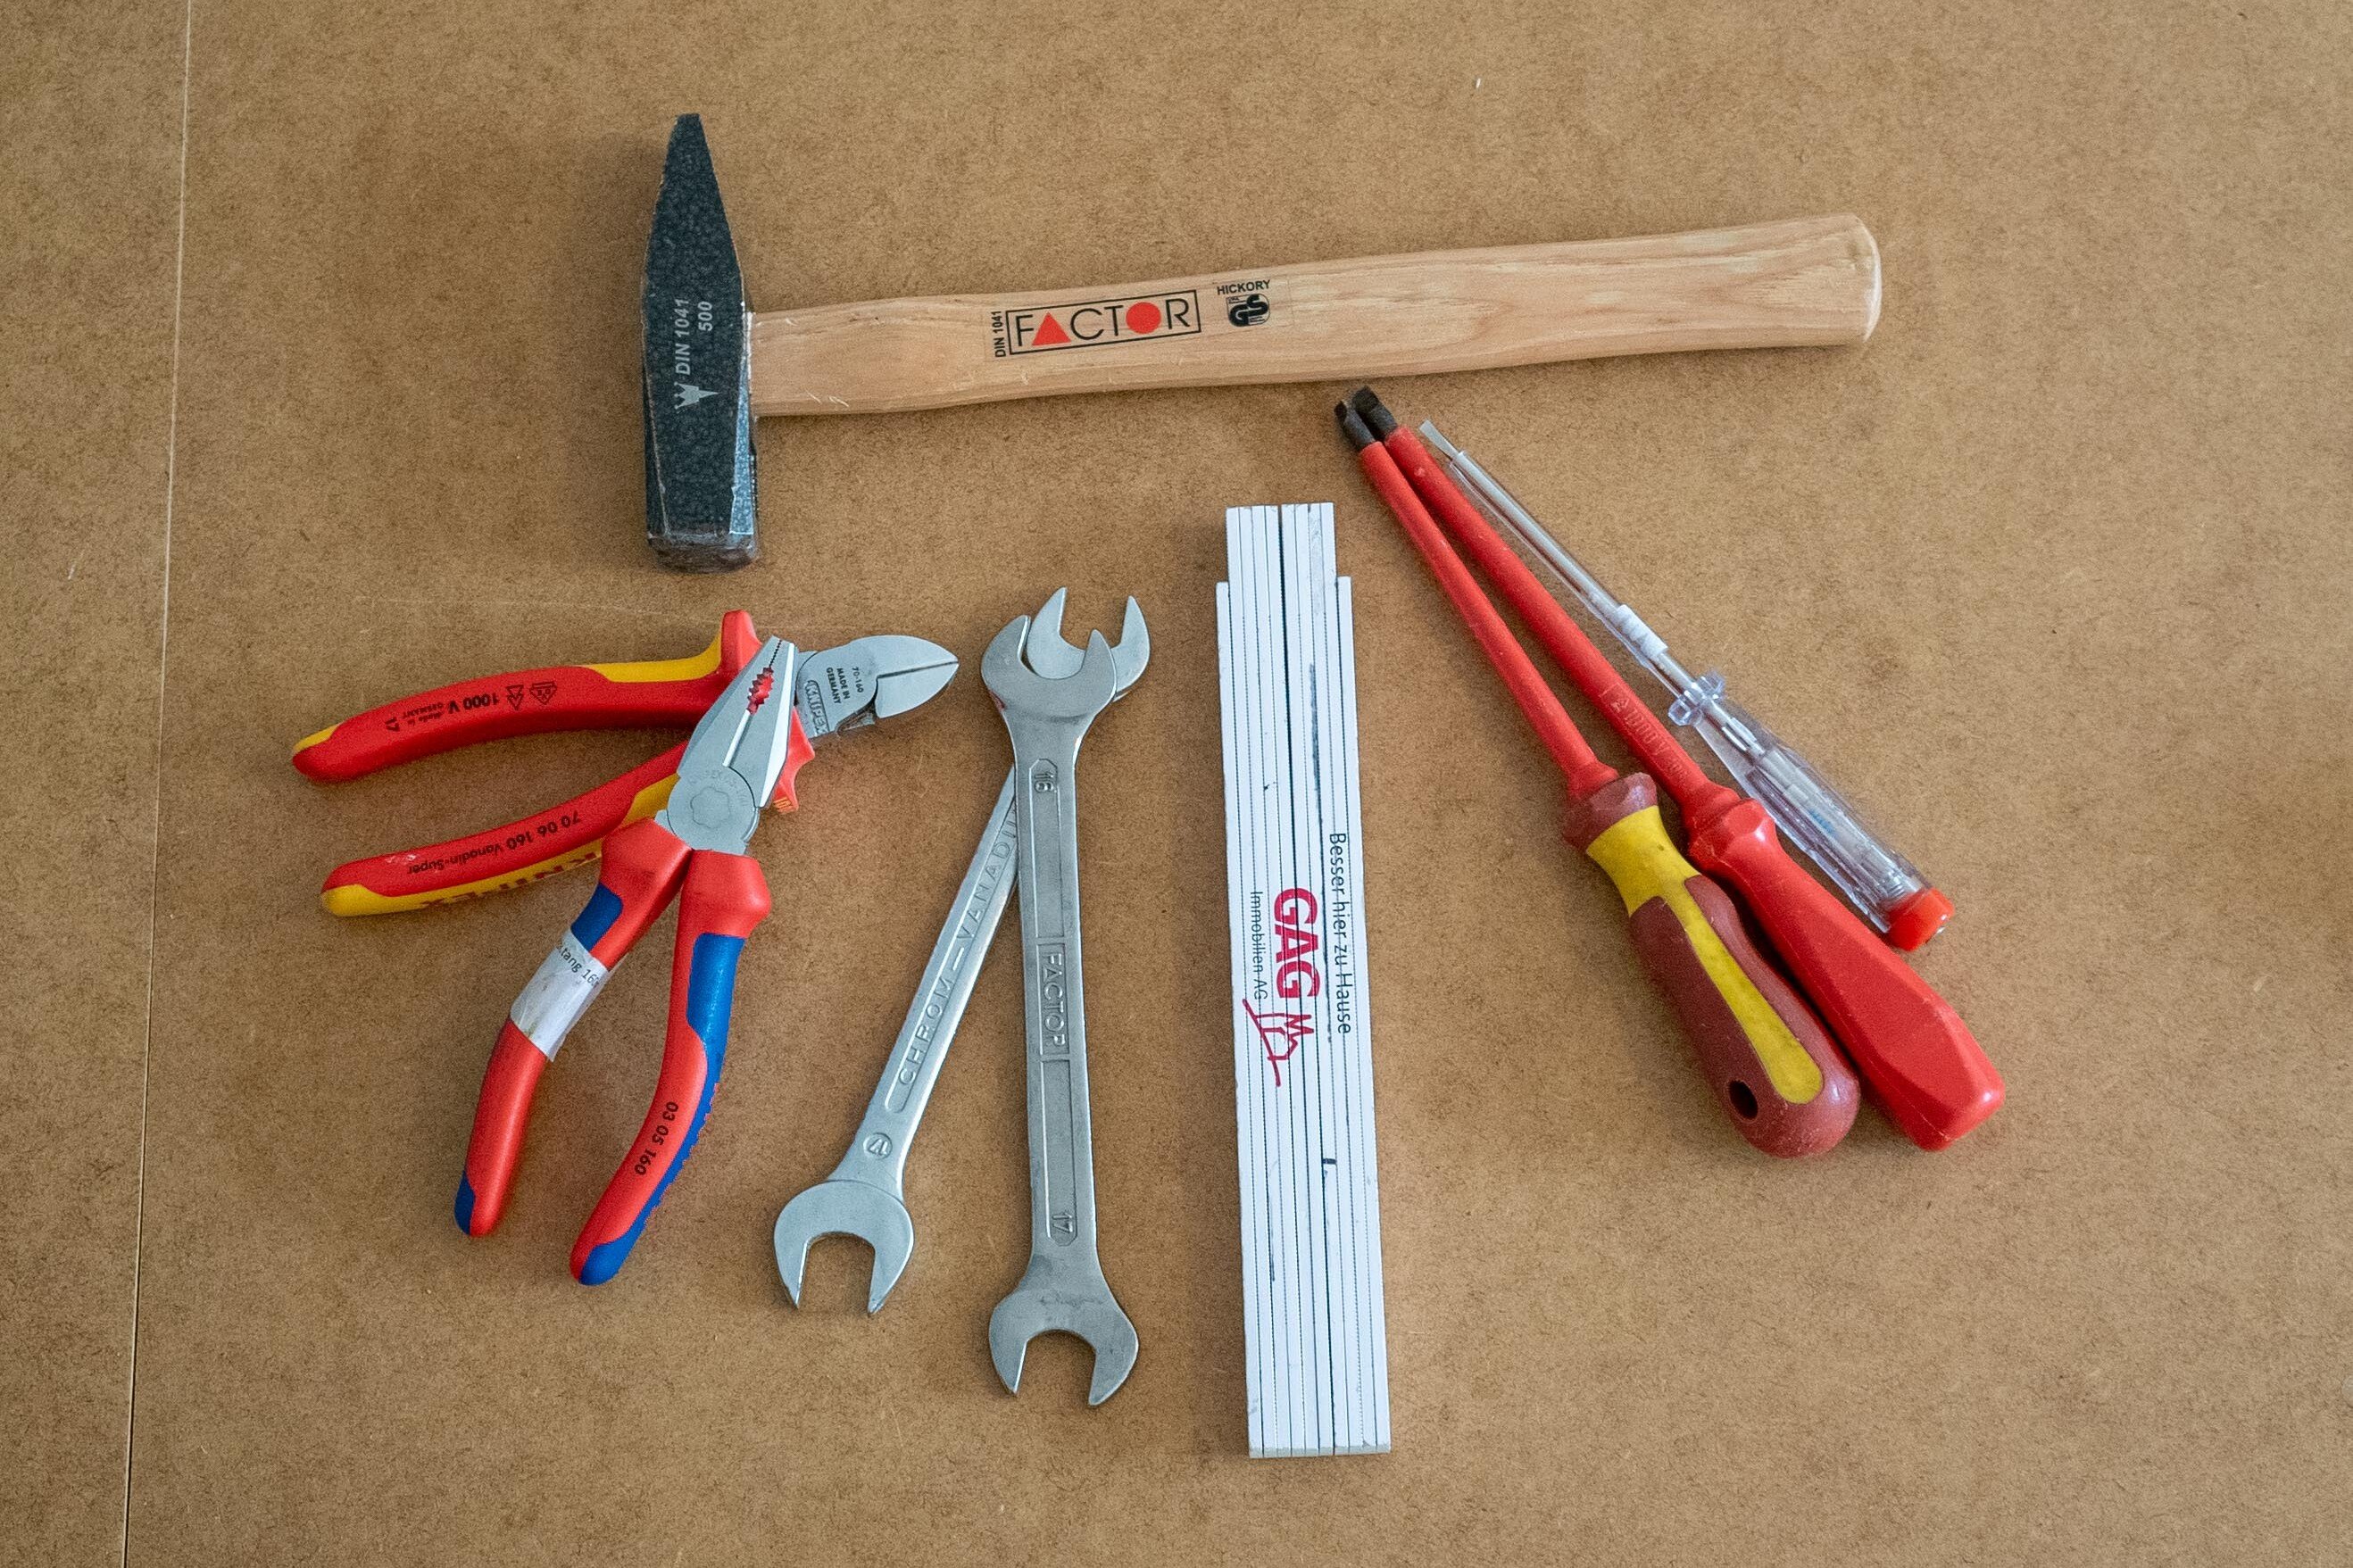 Hammer, Zange, Zollstock, Schraubendreher und Co. für Werkzeug-Grundausstattung